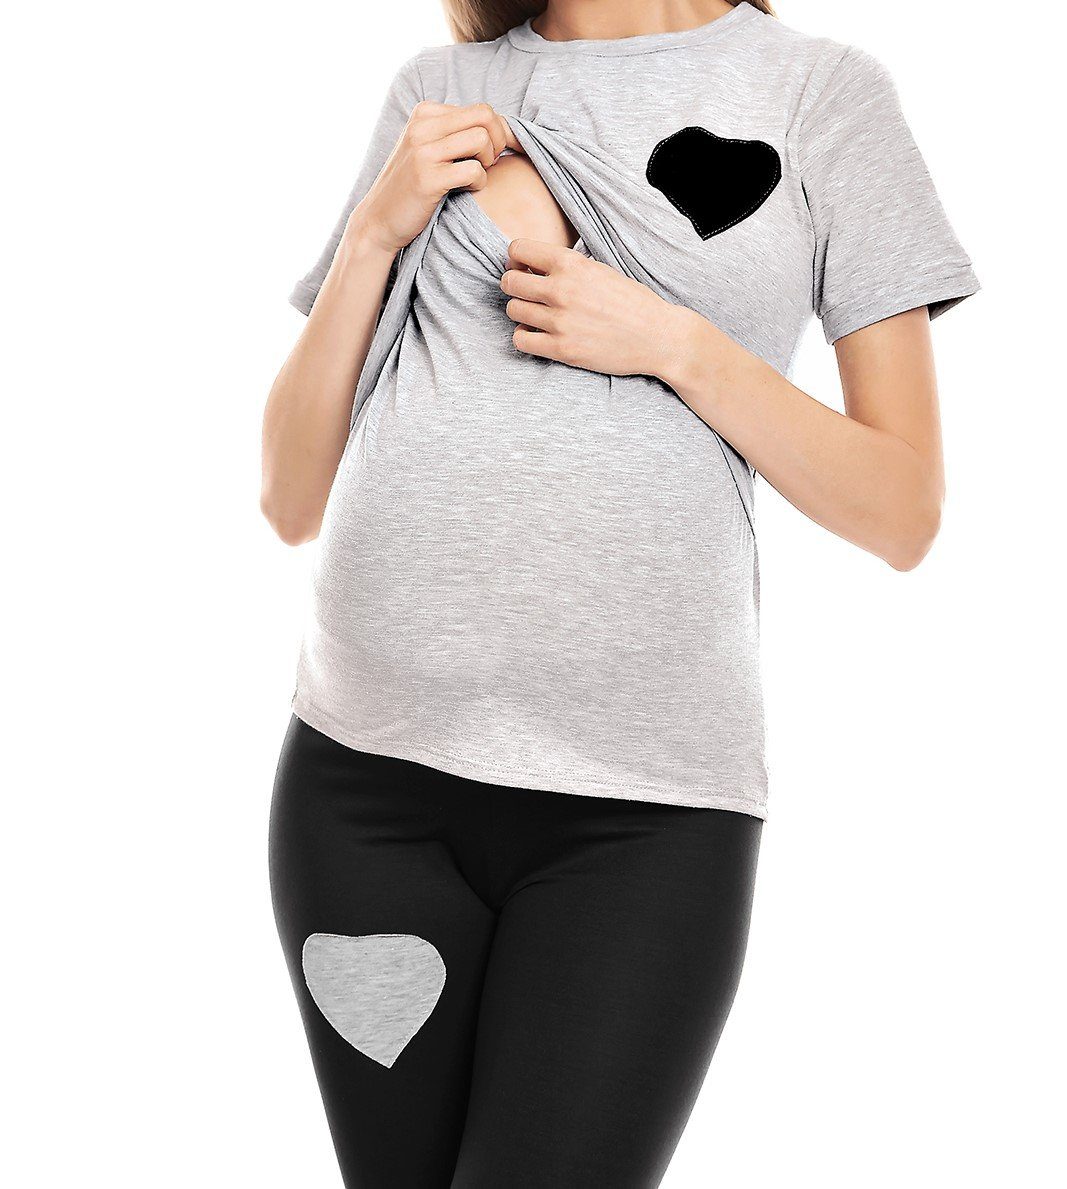 PeeKaBoo Umstandspyjama grau/schwarz Schwangerschaft Schlafanzug Stillschlafanzug Stillen